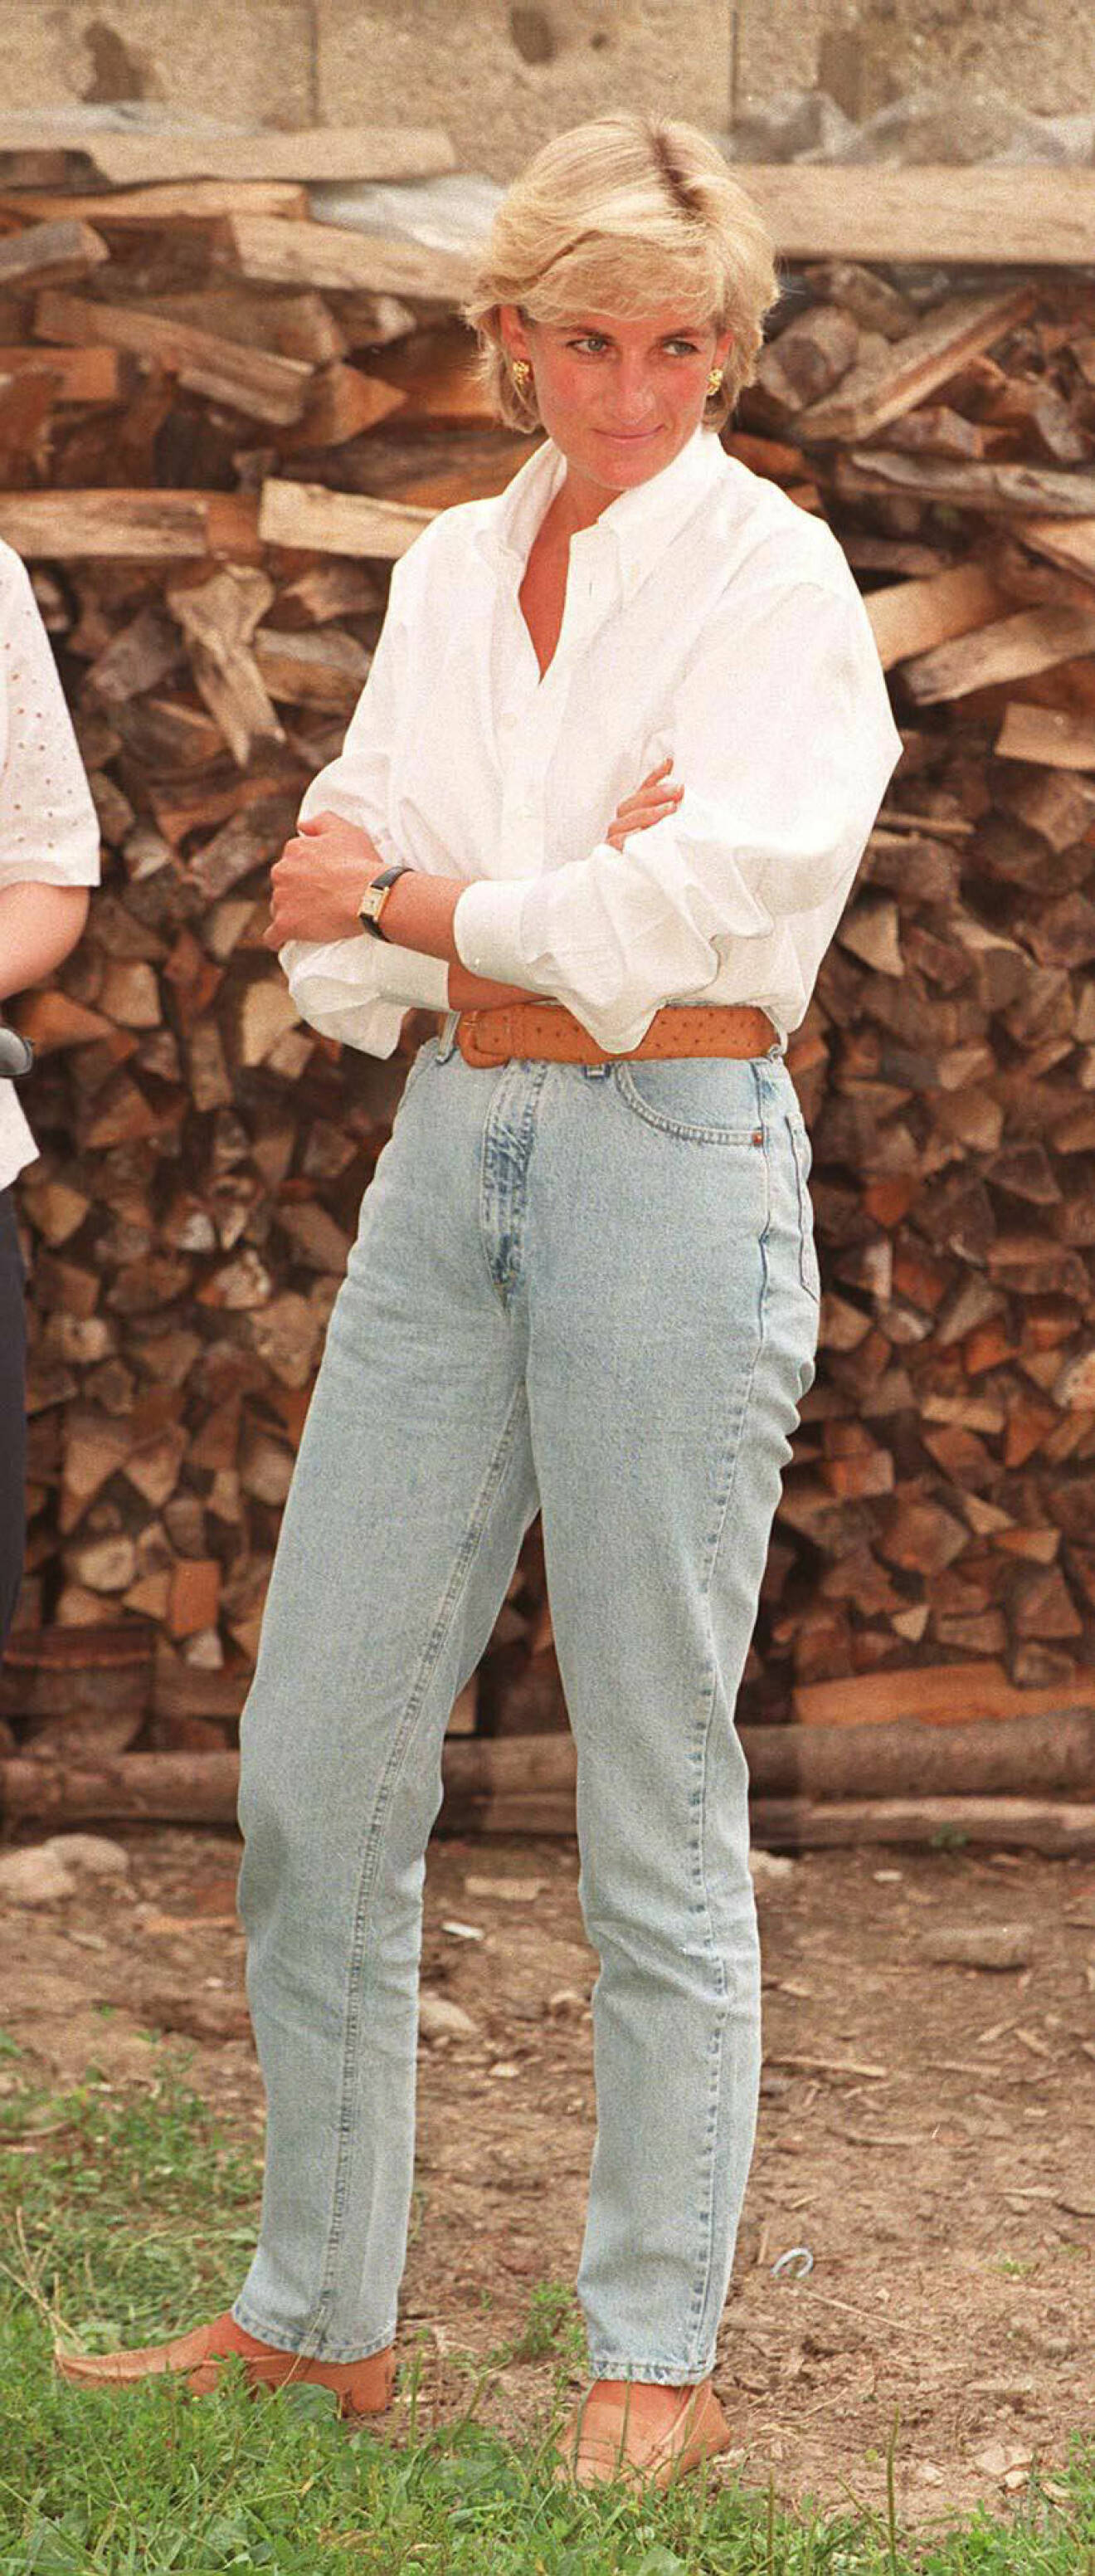 Prinsessan Diana i ljusblå, klassiska mom-jeans, jeans med hög midja. Till jeansen har hon en vit, oversizad skjorta.